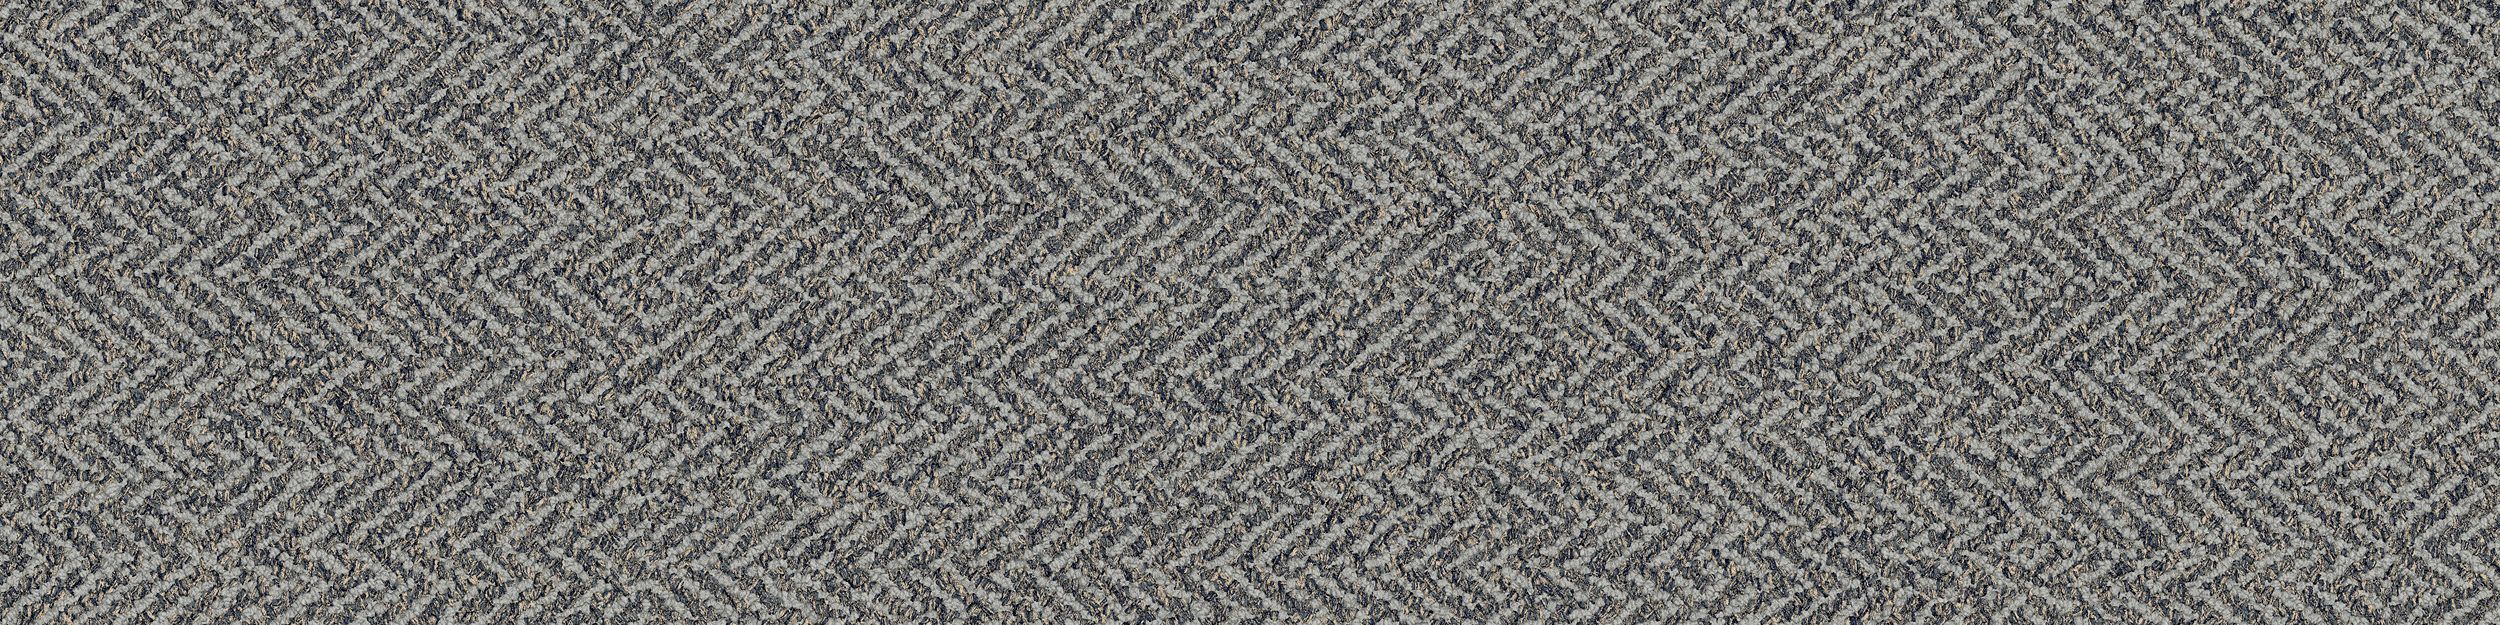 Third Space 308 Carpet Tile in Mist numéro d’image 2